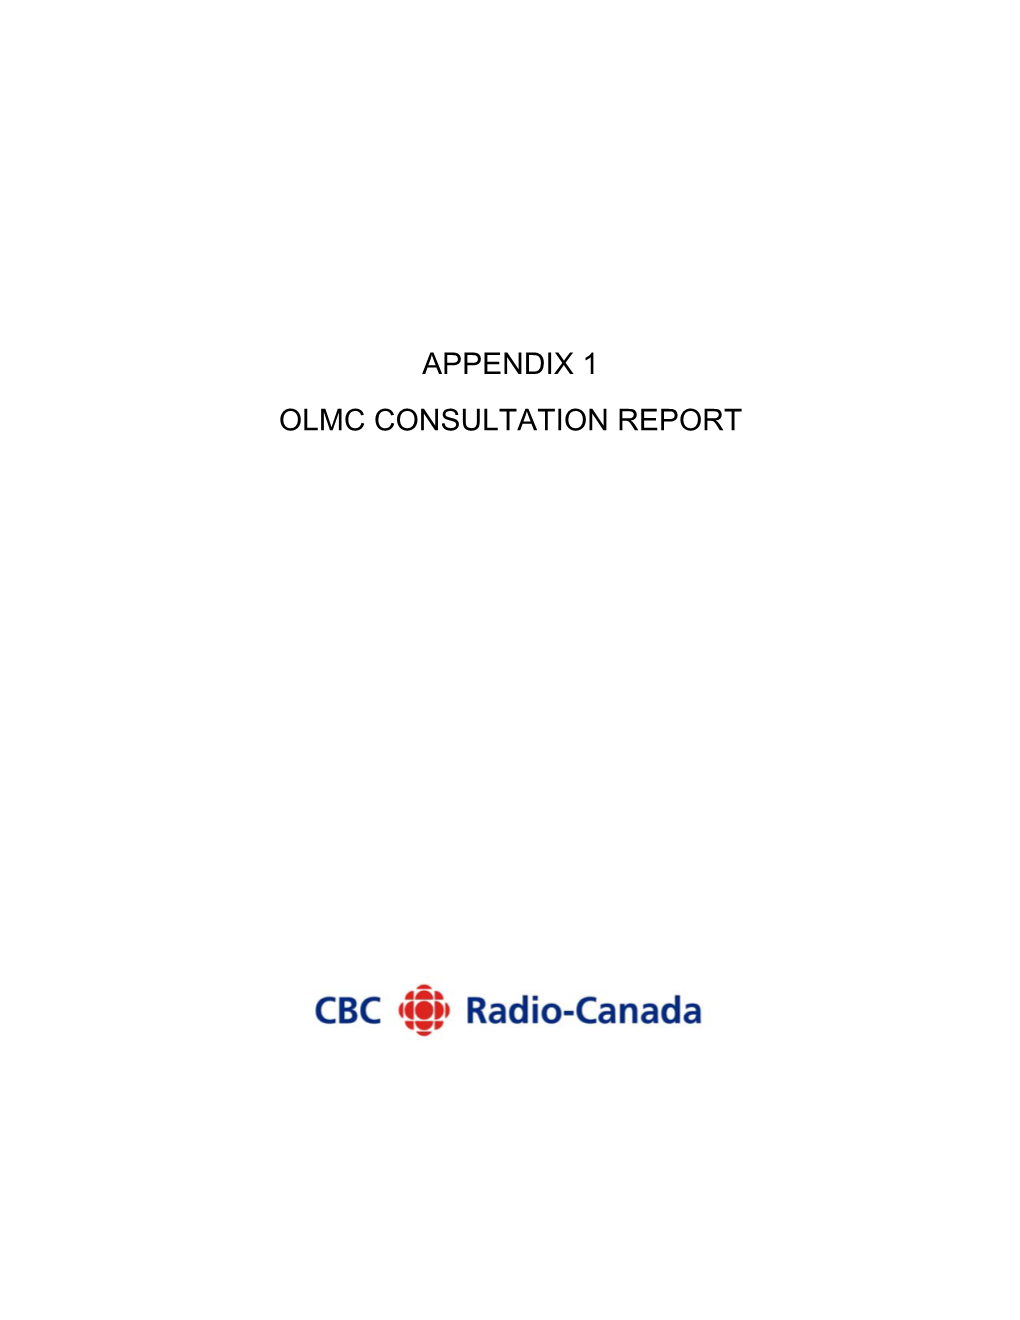 Appendix 1 Olmc Consultation Report